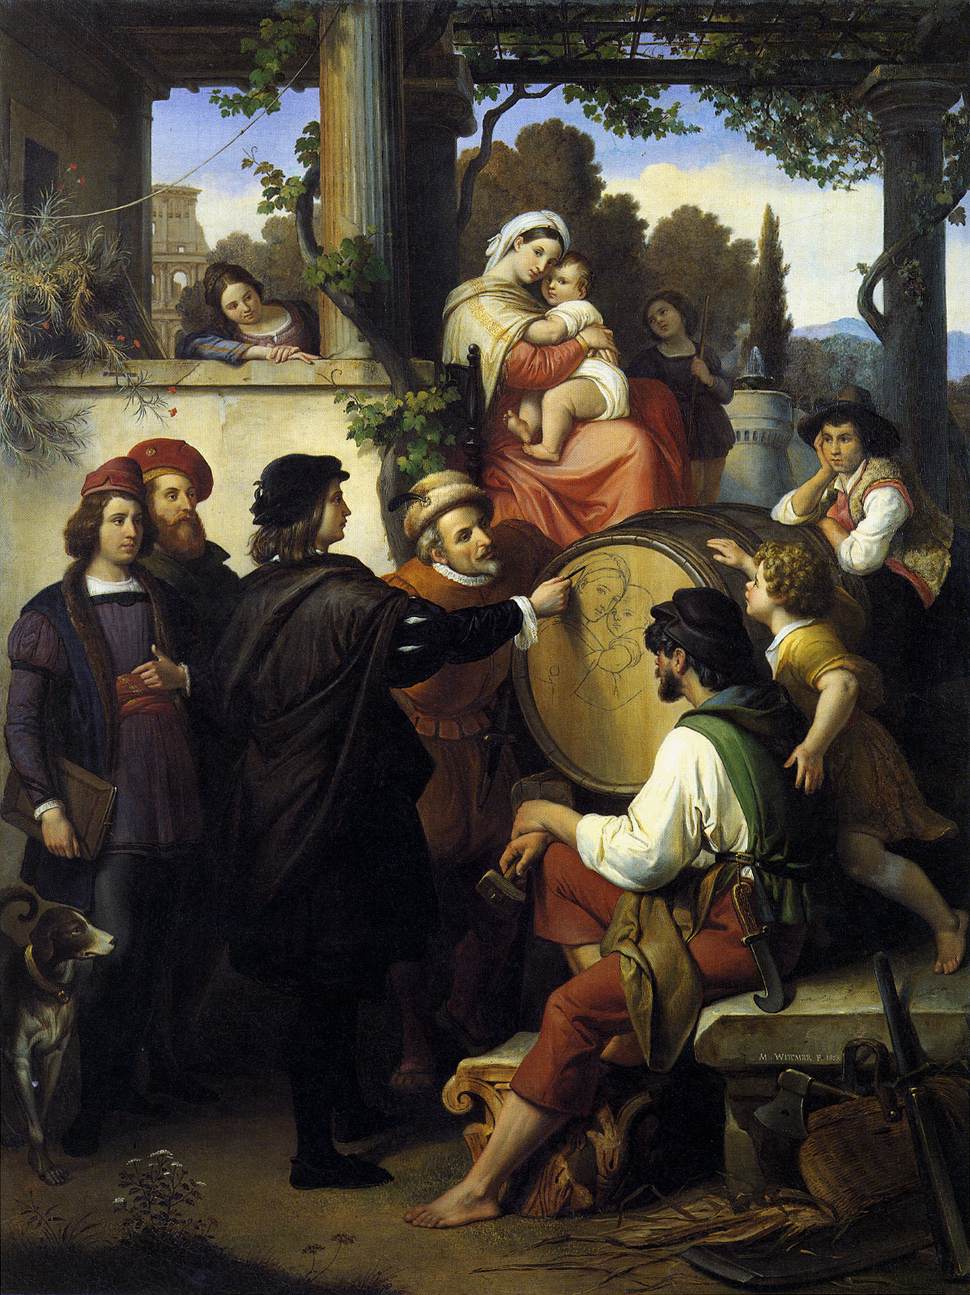 Le premier croquis de Rafael de «La Virgen de la Sedia»